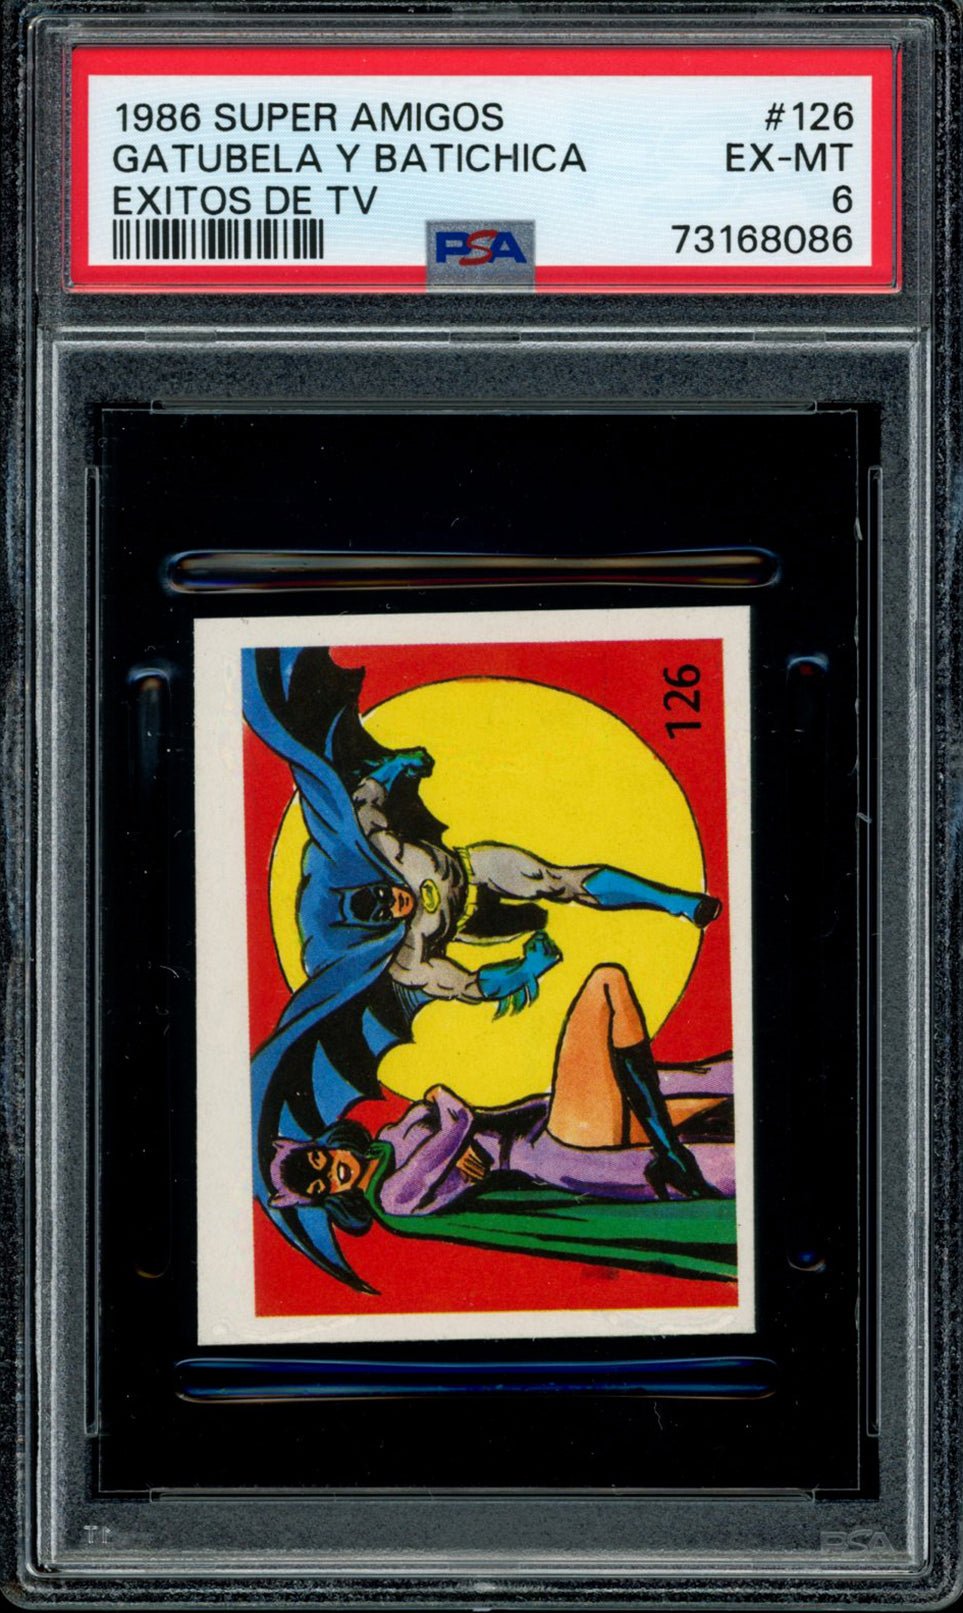 BATWOMAN & BATMAN PSA 6 1986 Reyauca Super Amigos Exitos de TV #126 DC Comics Base Graded Cards - Hobby Gems